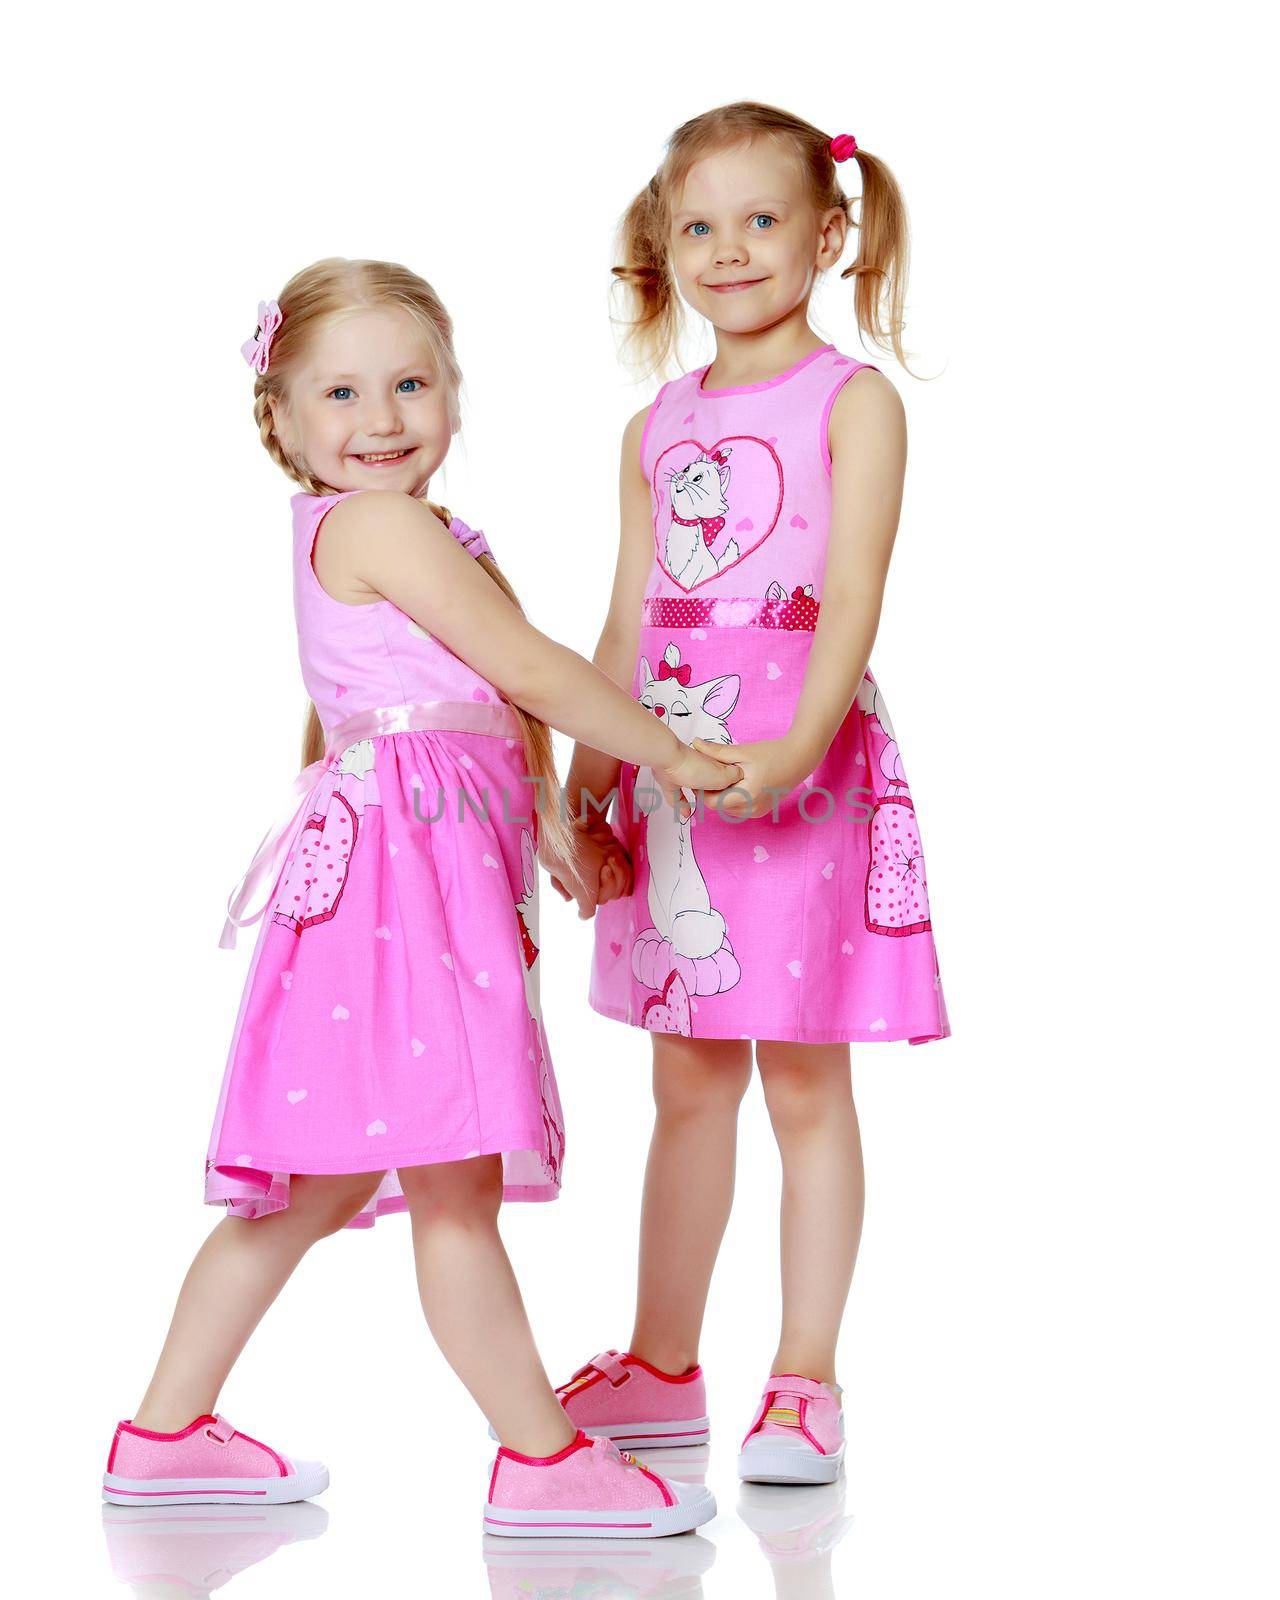 Two cute little girls in full growth by kolesnikov_studio